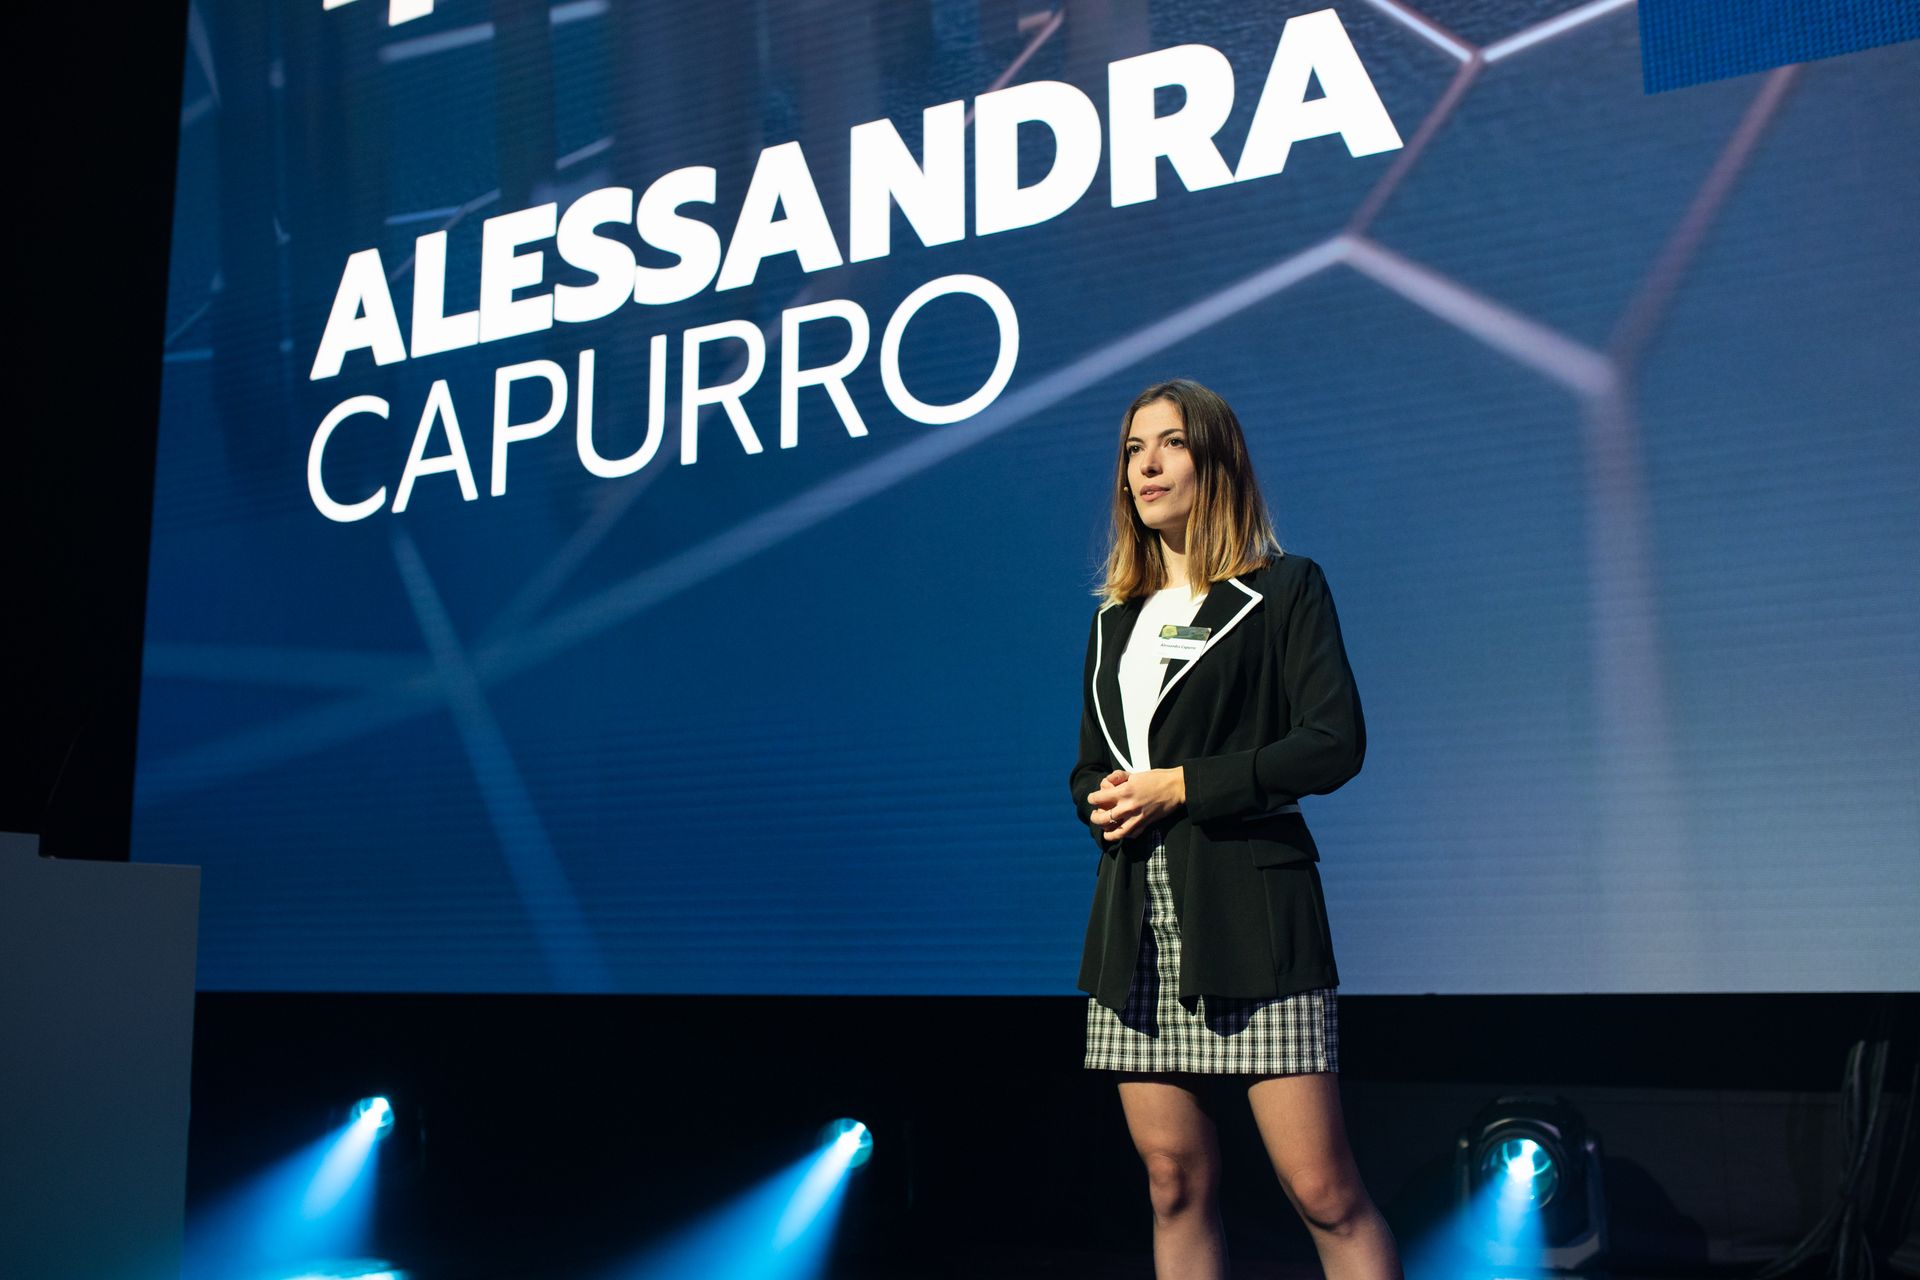 Alessandra Capurro, vencedora da classificação "Nextgen Hero", na cerimónia de entrega do "Digital Economy Award" da Suíça